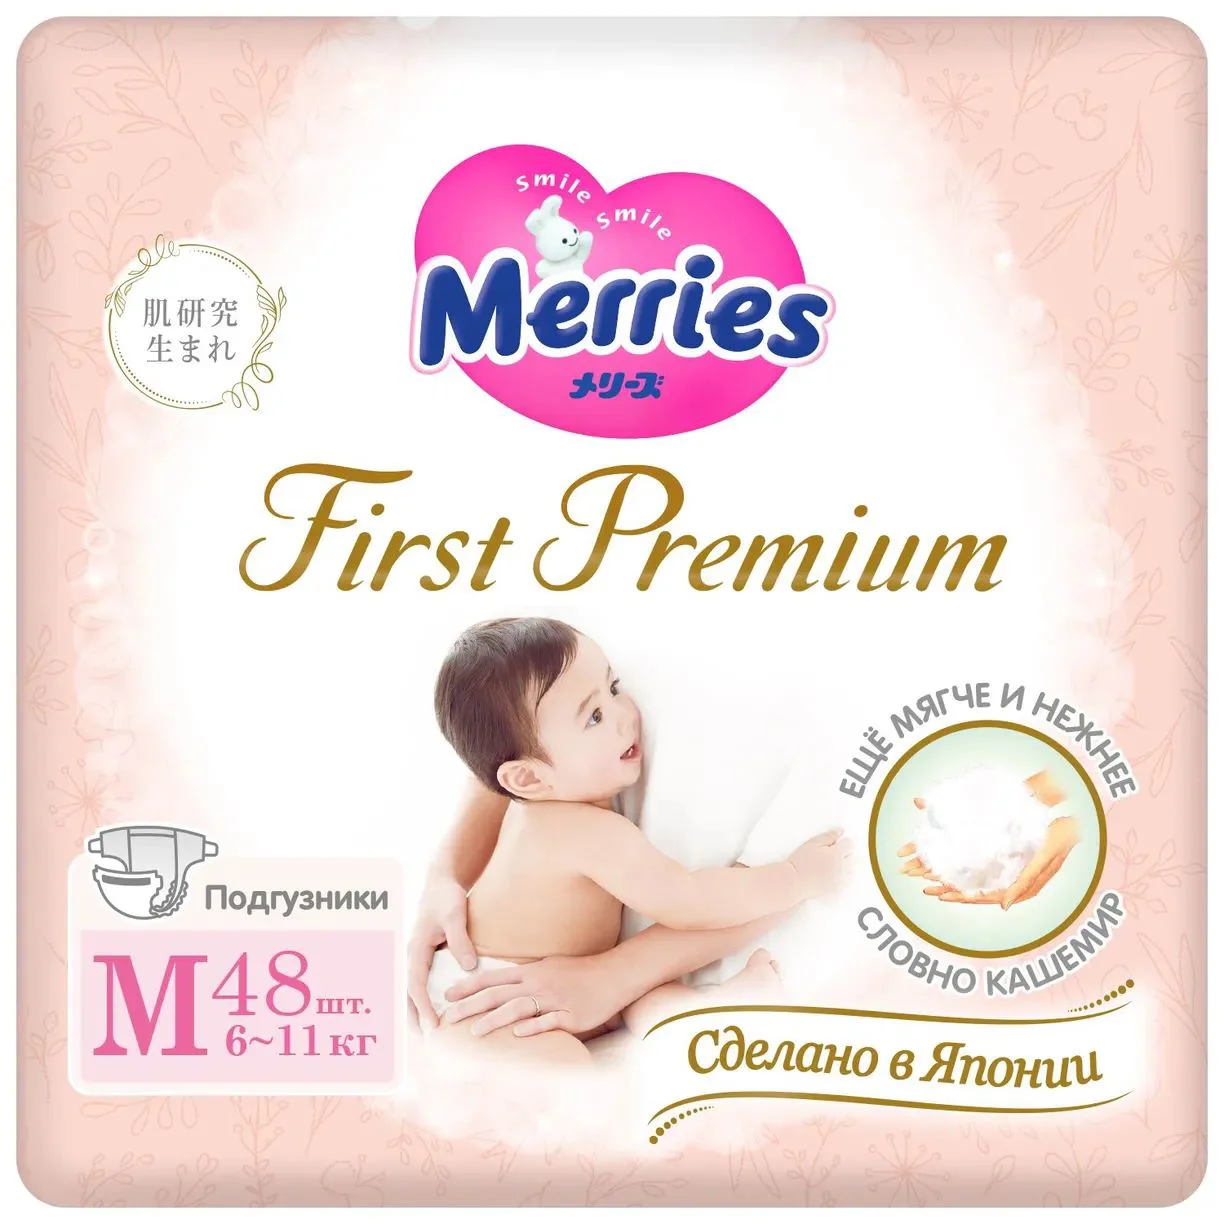 Scutece Merries First Premium marimea M (6-11 kg), 48 buc